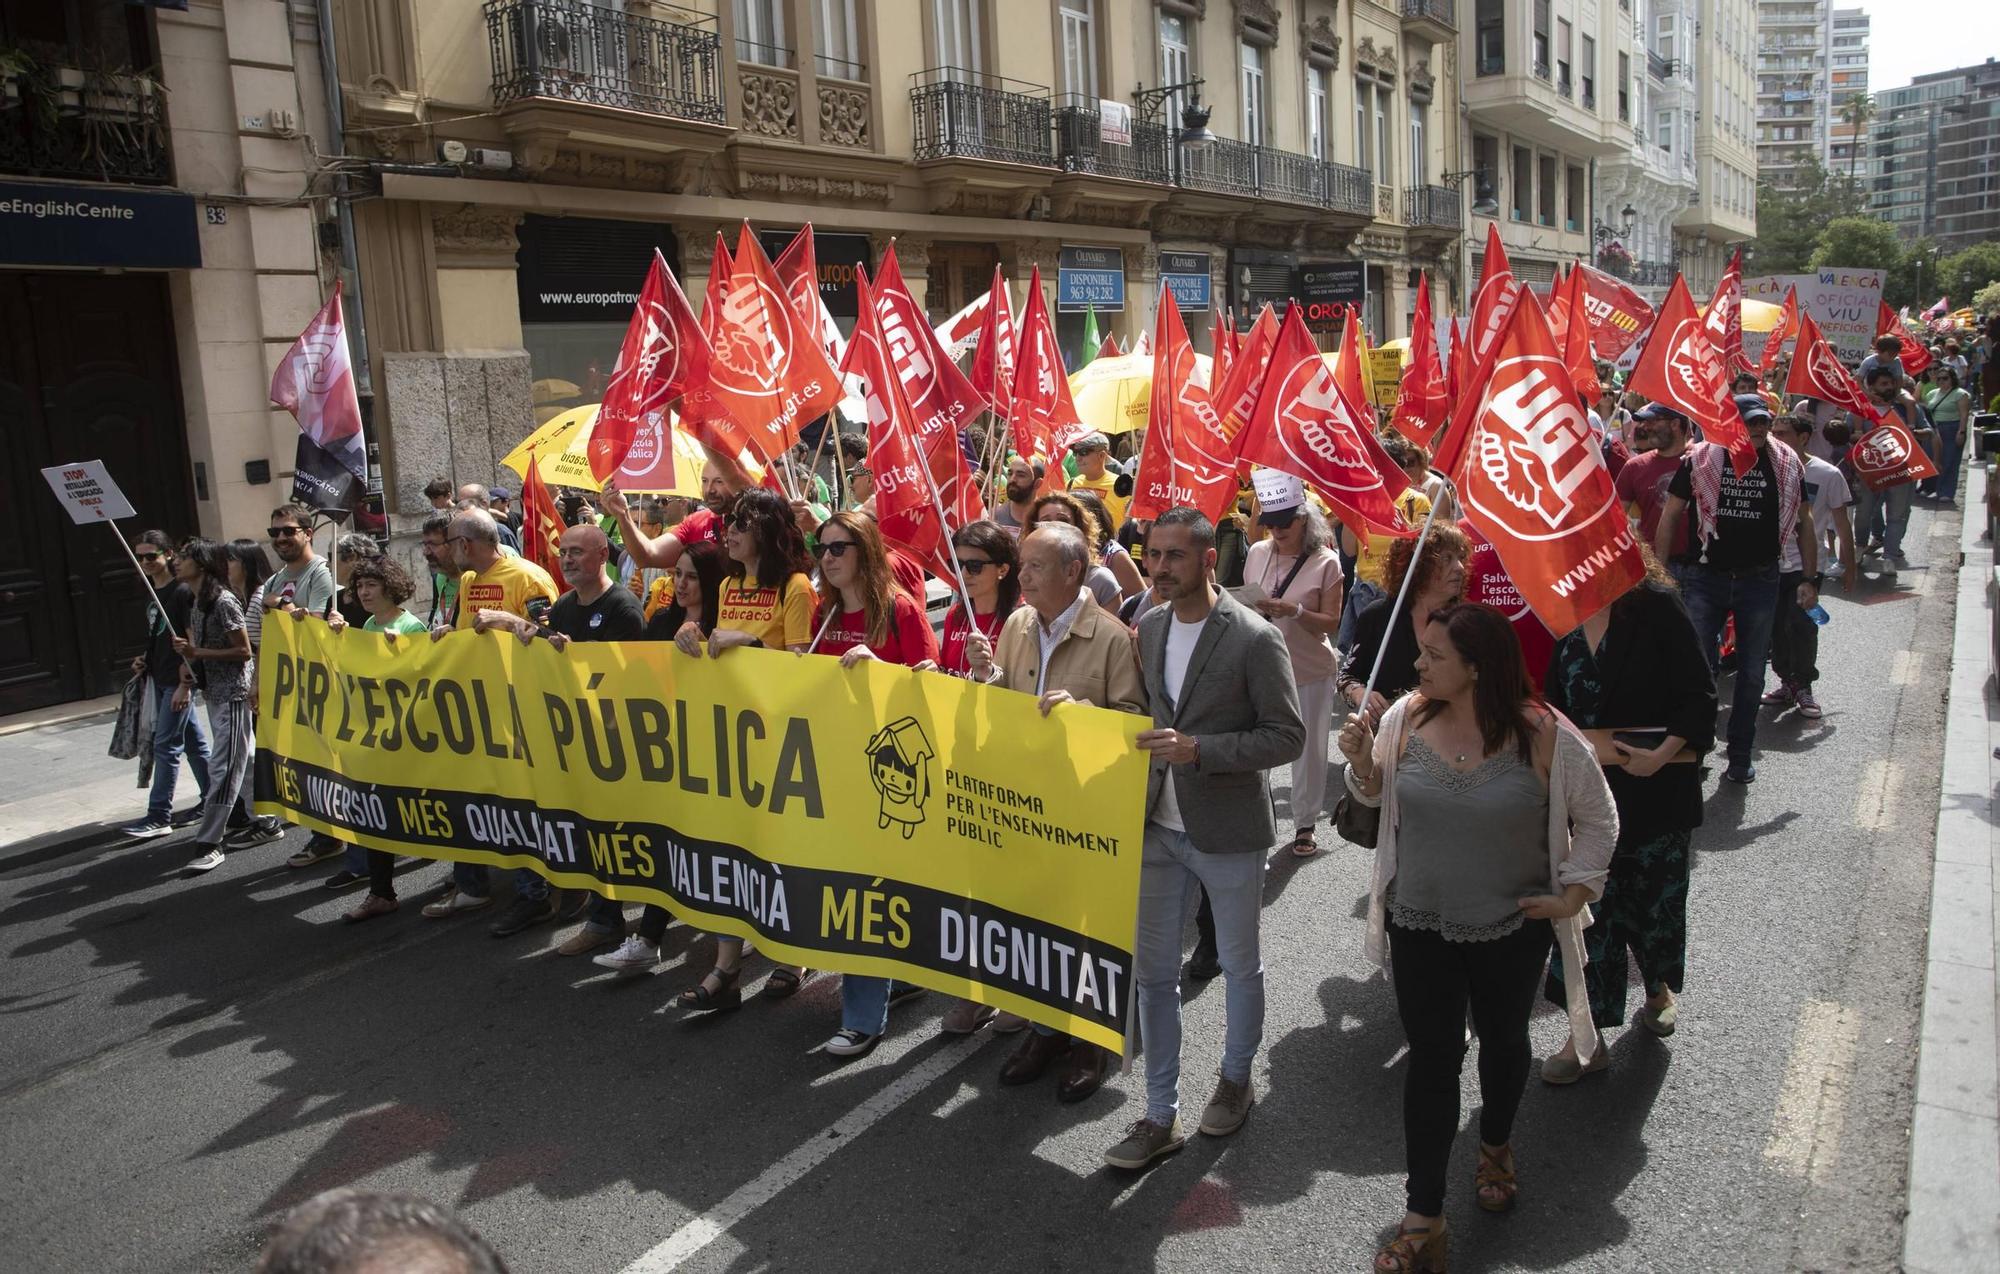 La huelga educativa en València, en imágenes